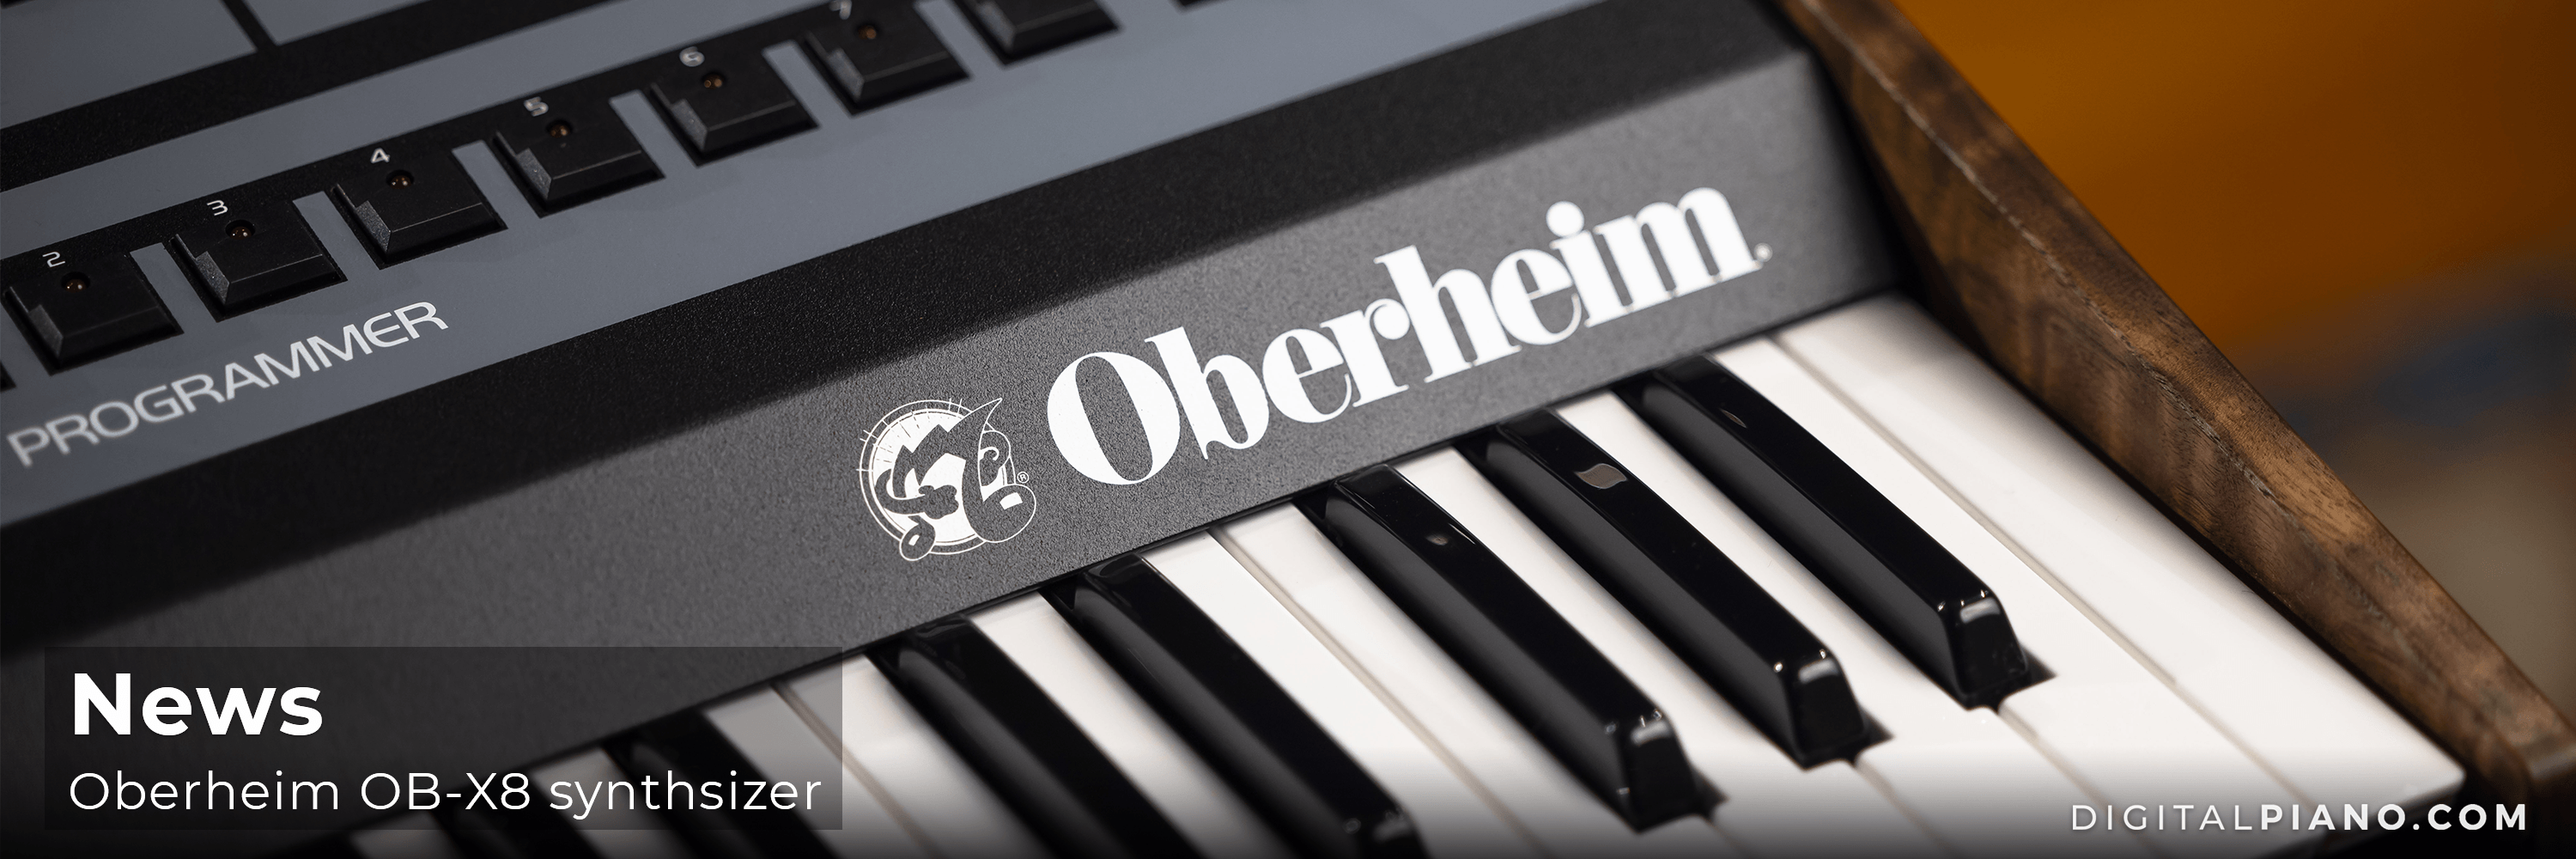 New Oberheim OB-X8